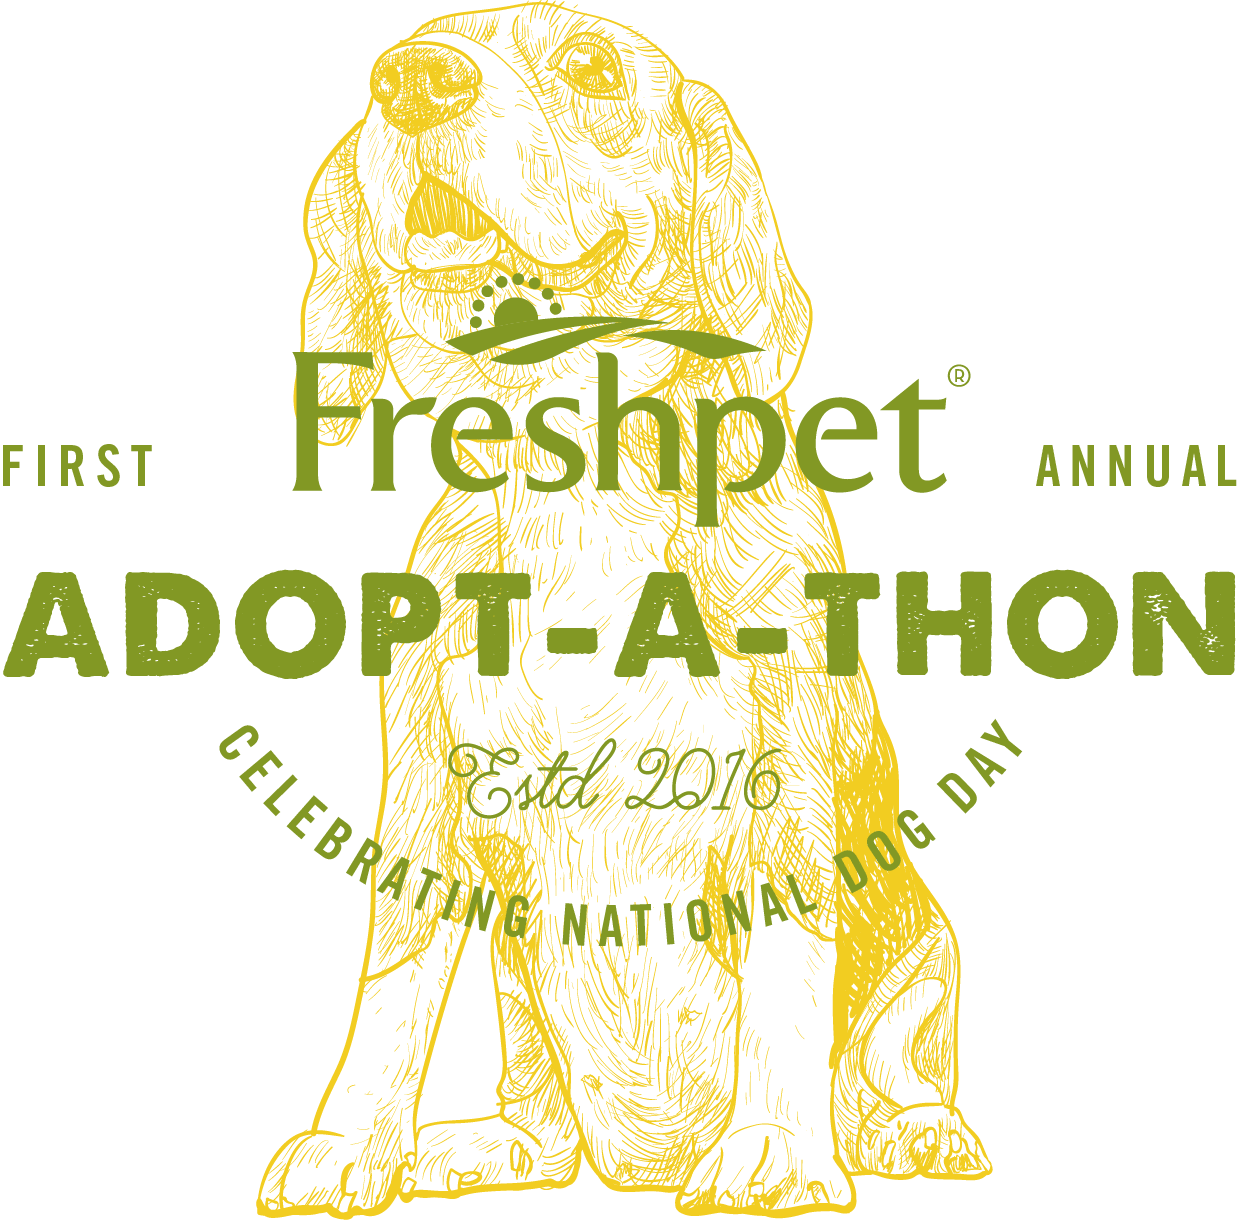 Oslavte Národní den psů prvním ročníkem ADOPT-A-THON